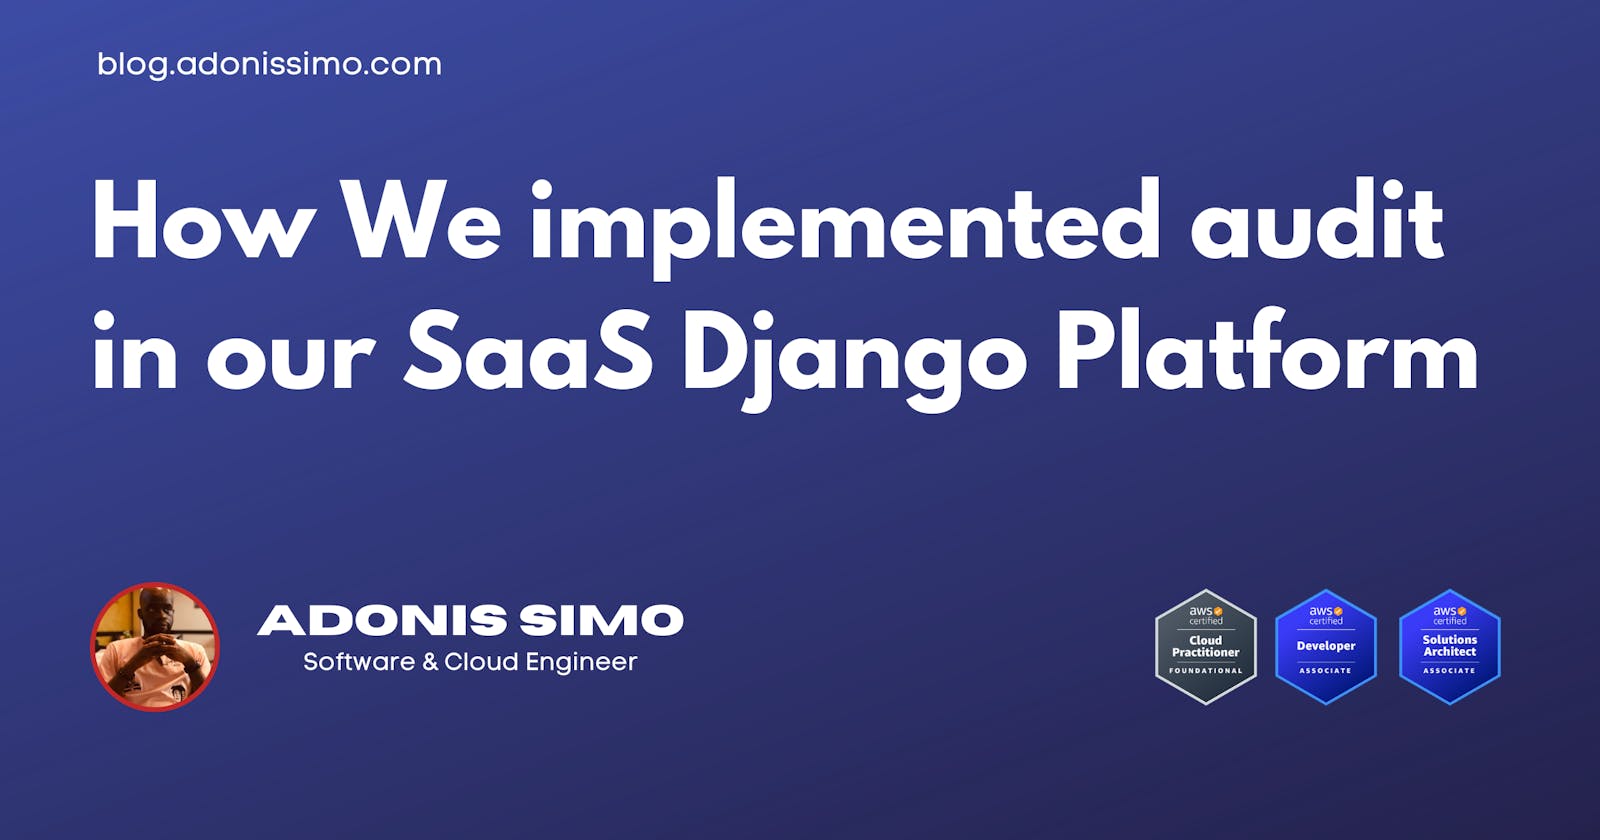 How We implemented Audit in our SaaS Django Platform